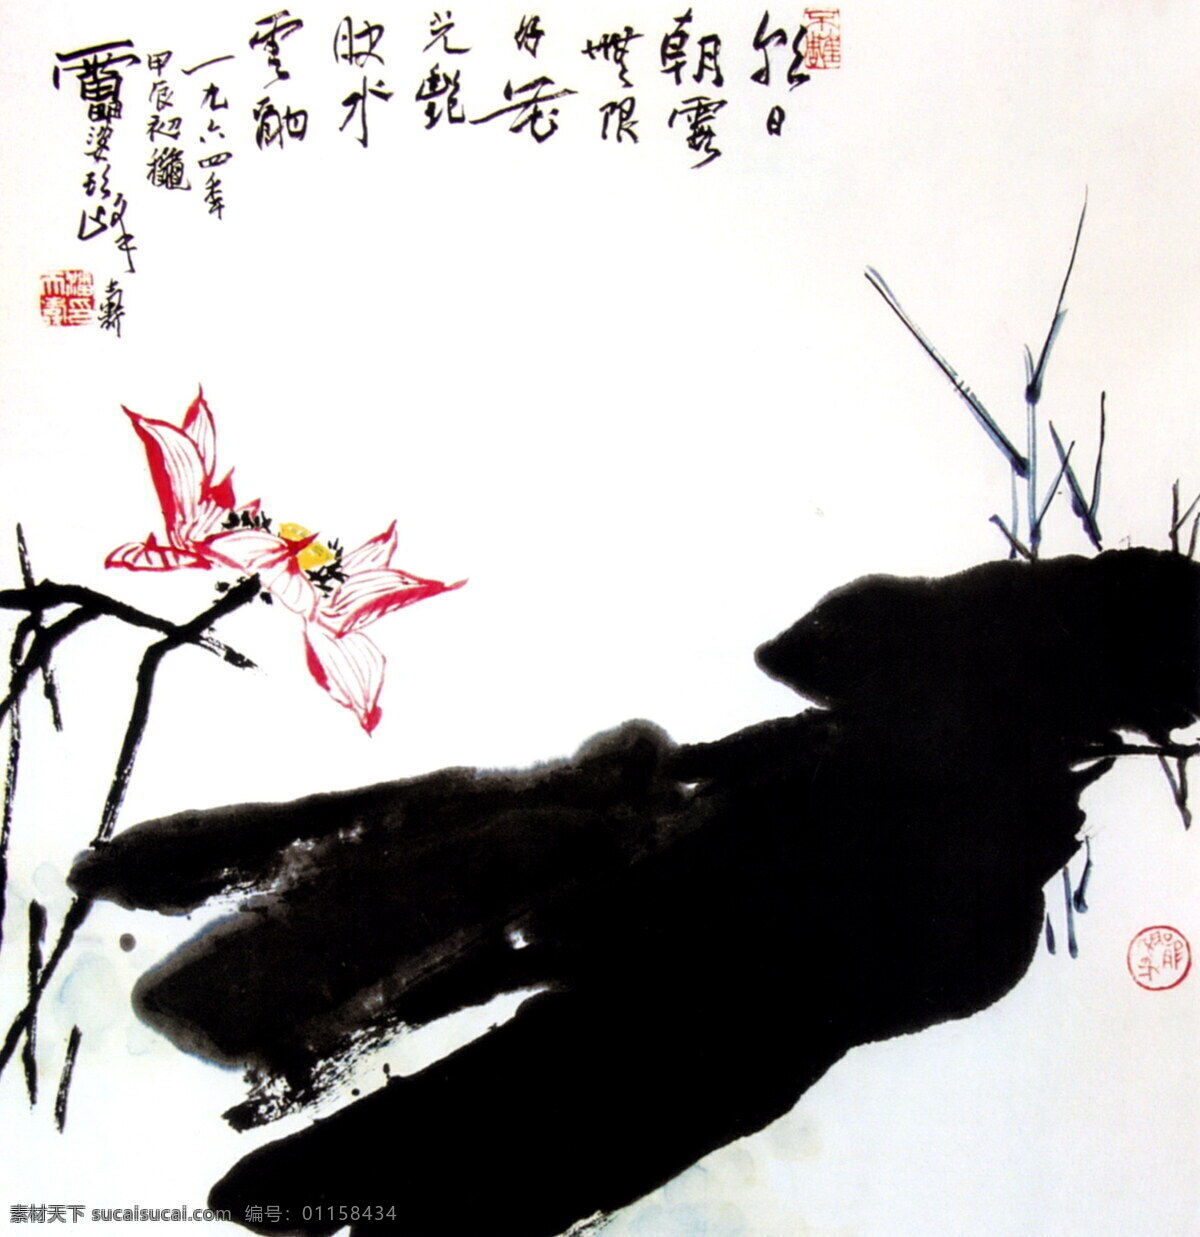 潘天寿国画 传统国画 古画 水墨画 设计素材 山水画篇 中国画篇 书画美术 白色